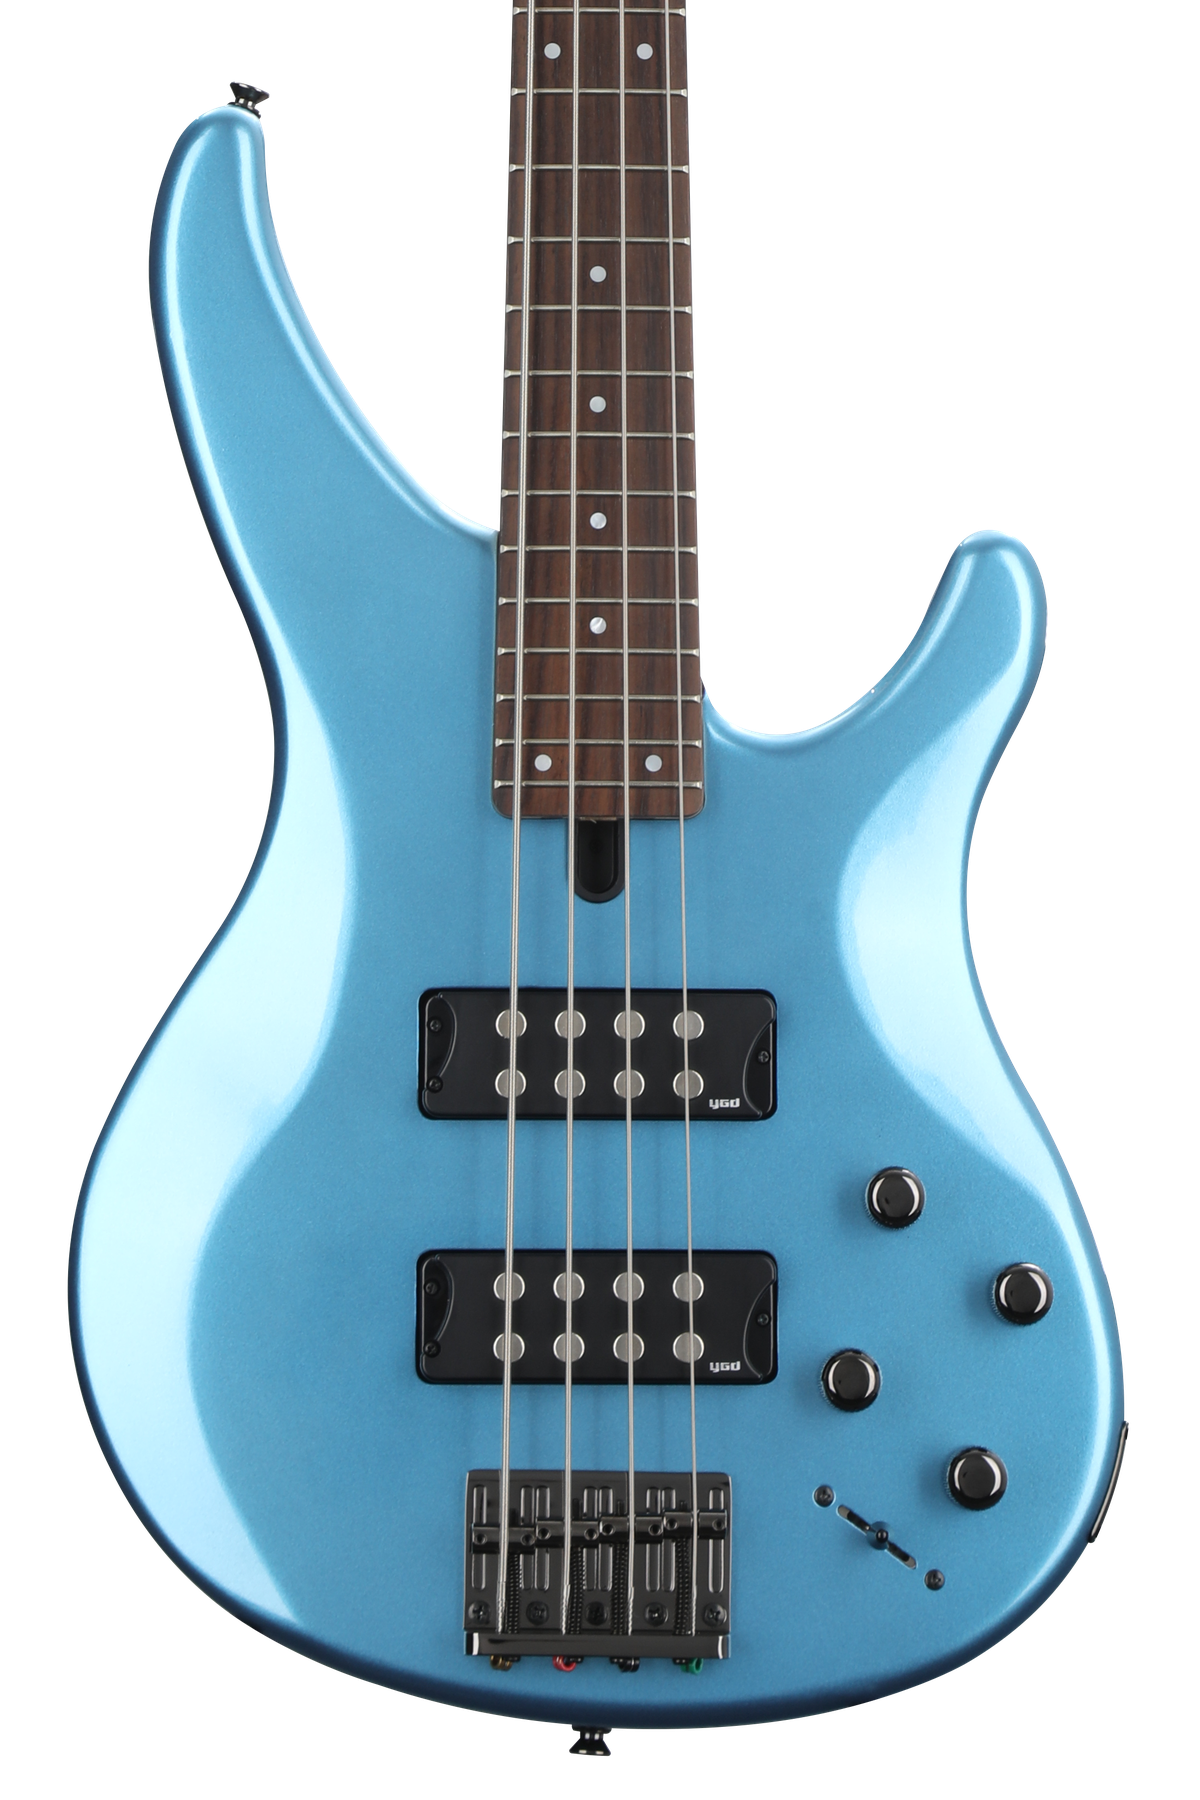 Yamaha TRBX304 Bass Guitar - Factory Blue | Sweetwater